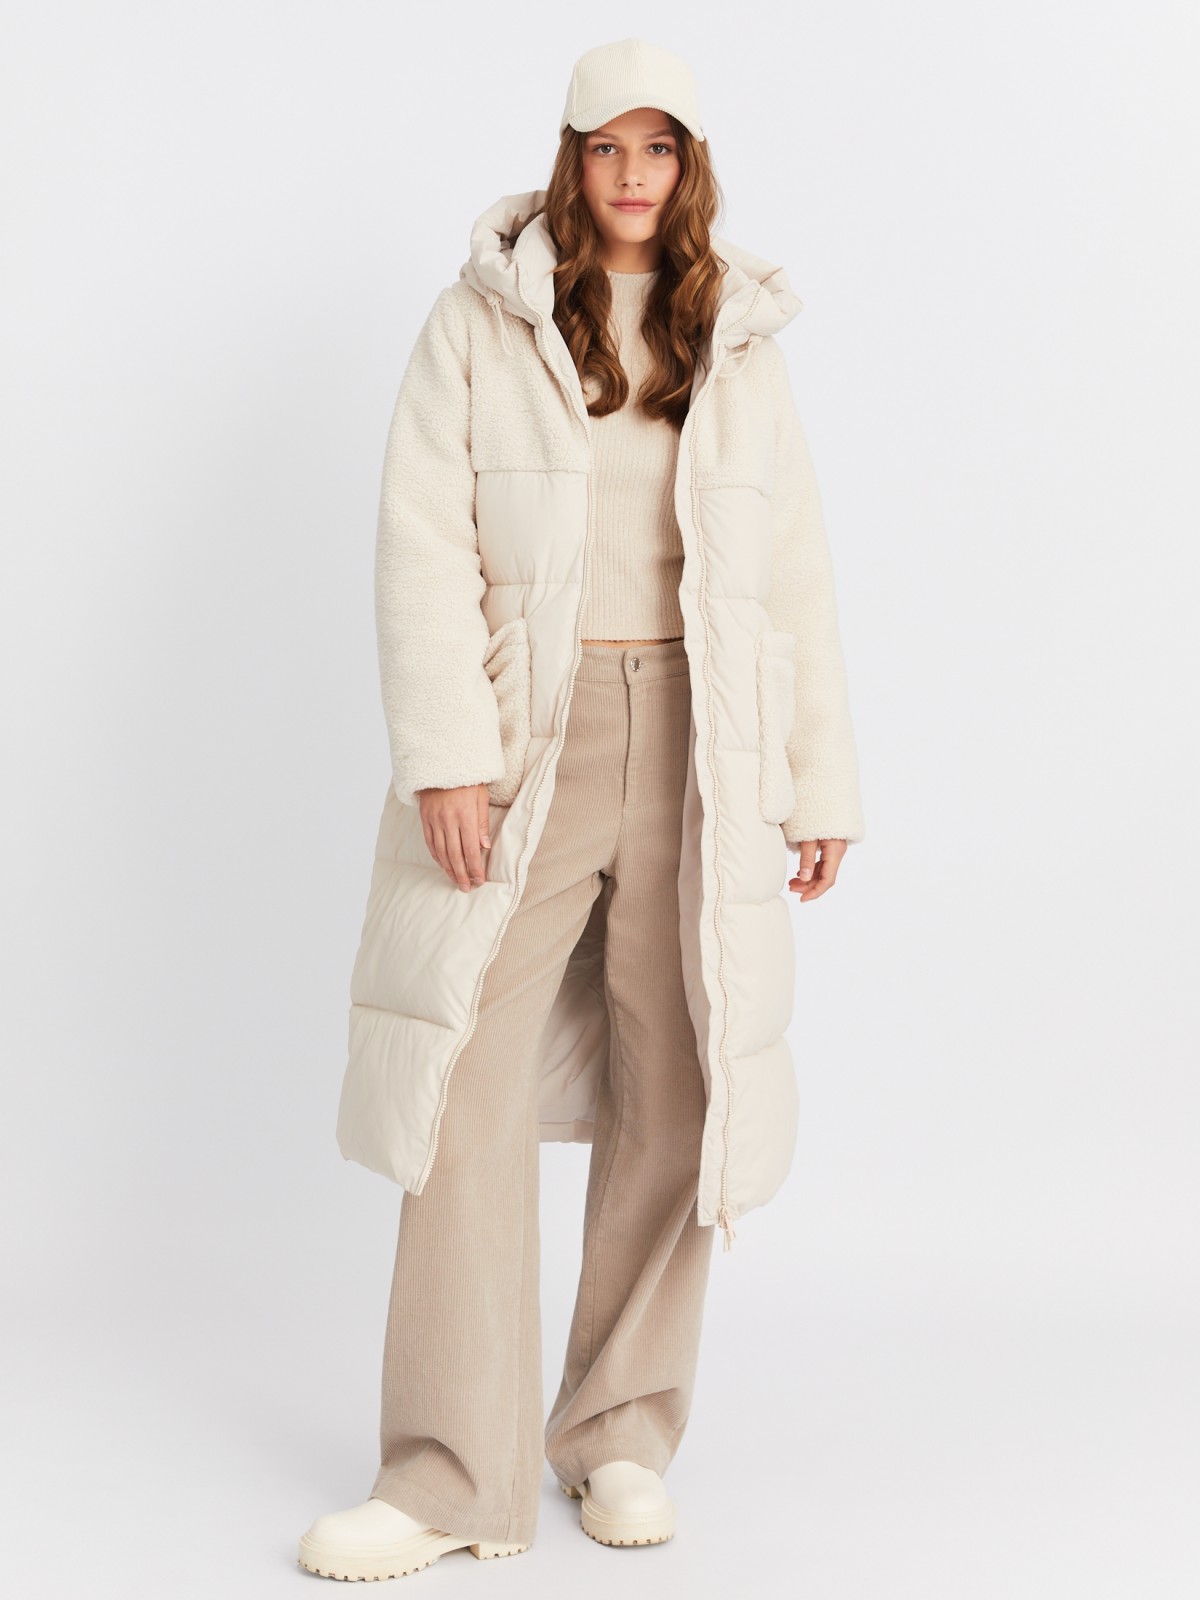 Тёплая куртка-пальто с отделкой из экомеха и капюшоном zolla 023425212154, цвет молоко, размер M - фото 2